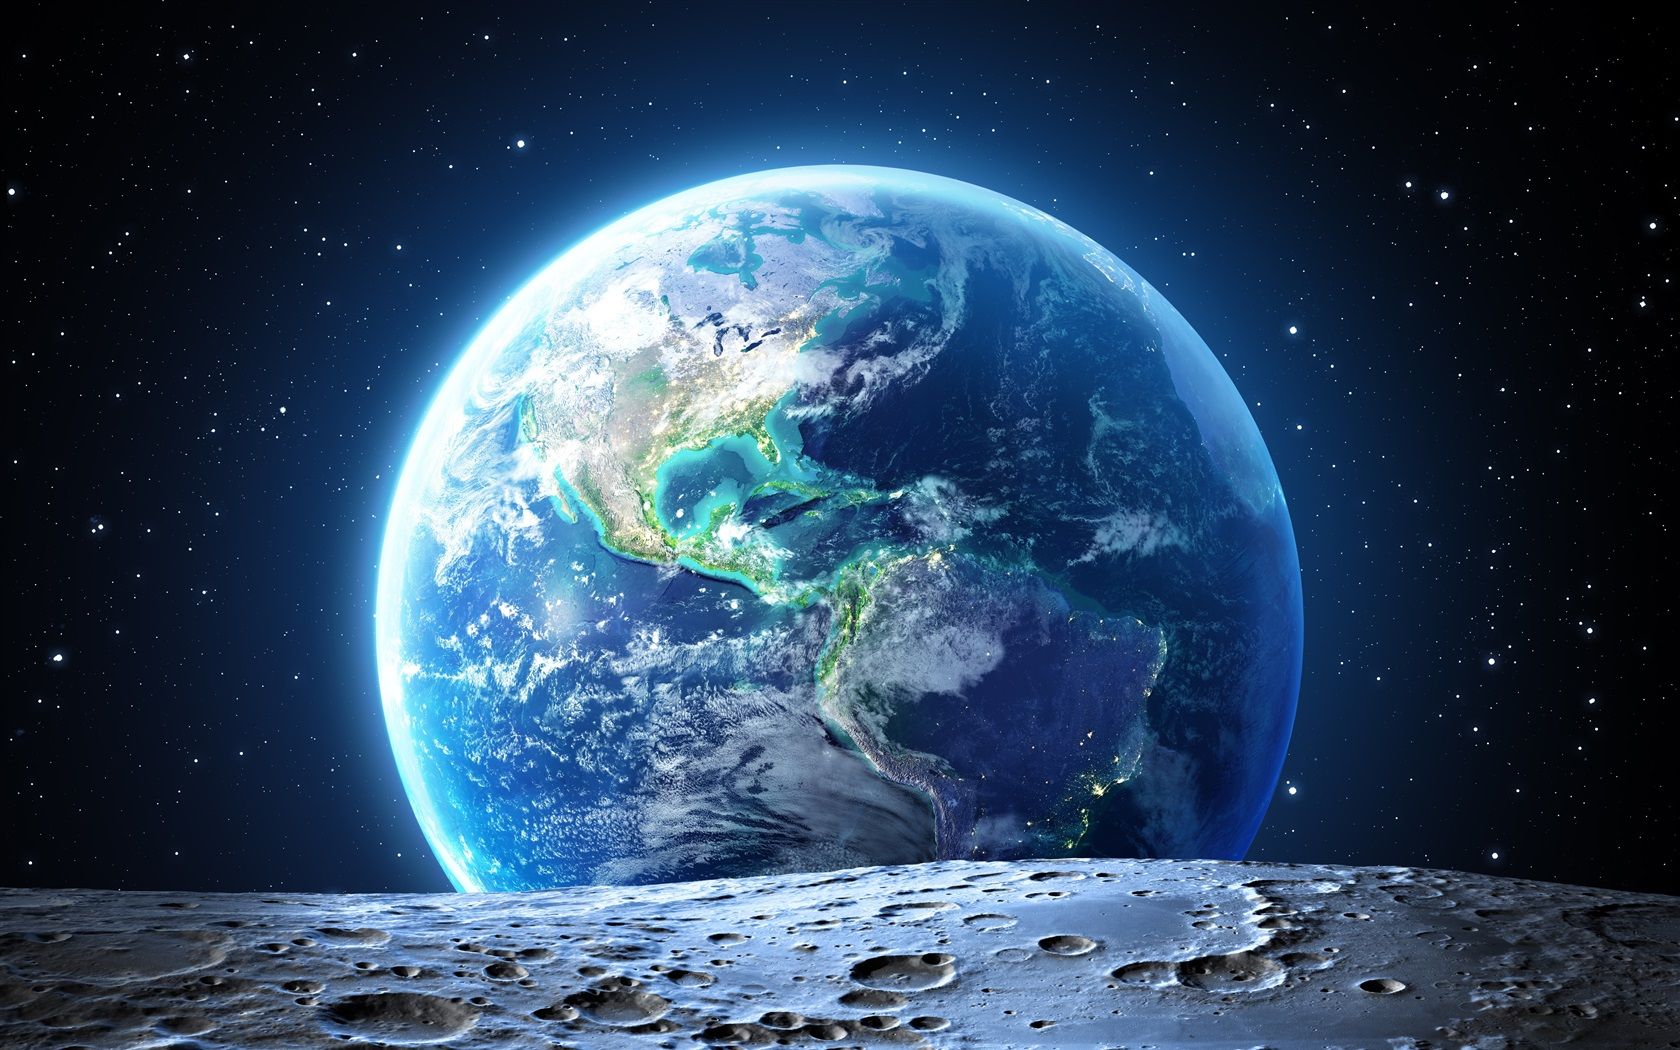  Das Beste Der Welt Hintergrundbild 1680x1050. Schaue Erde vom Mond 3840x2160 UHD 4K Hintergrundbilder, HD, Bild